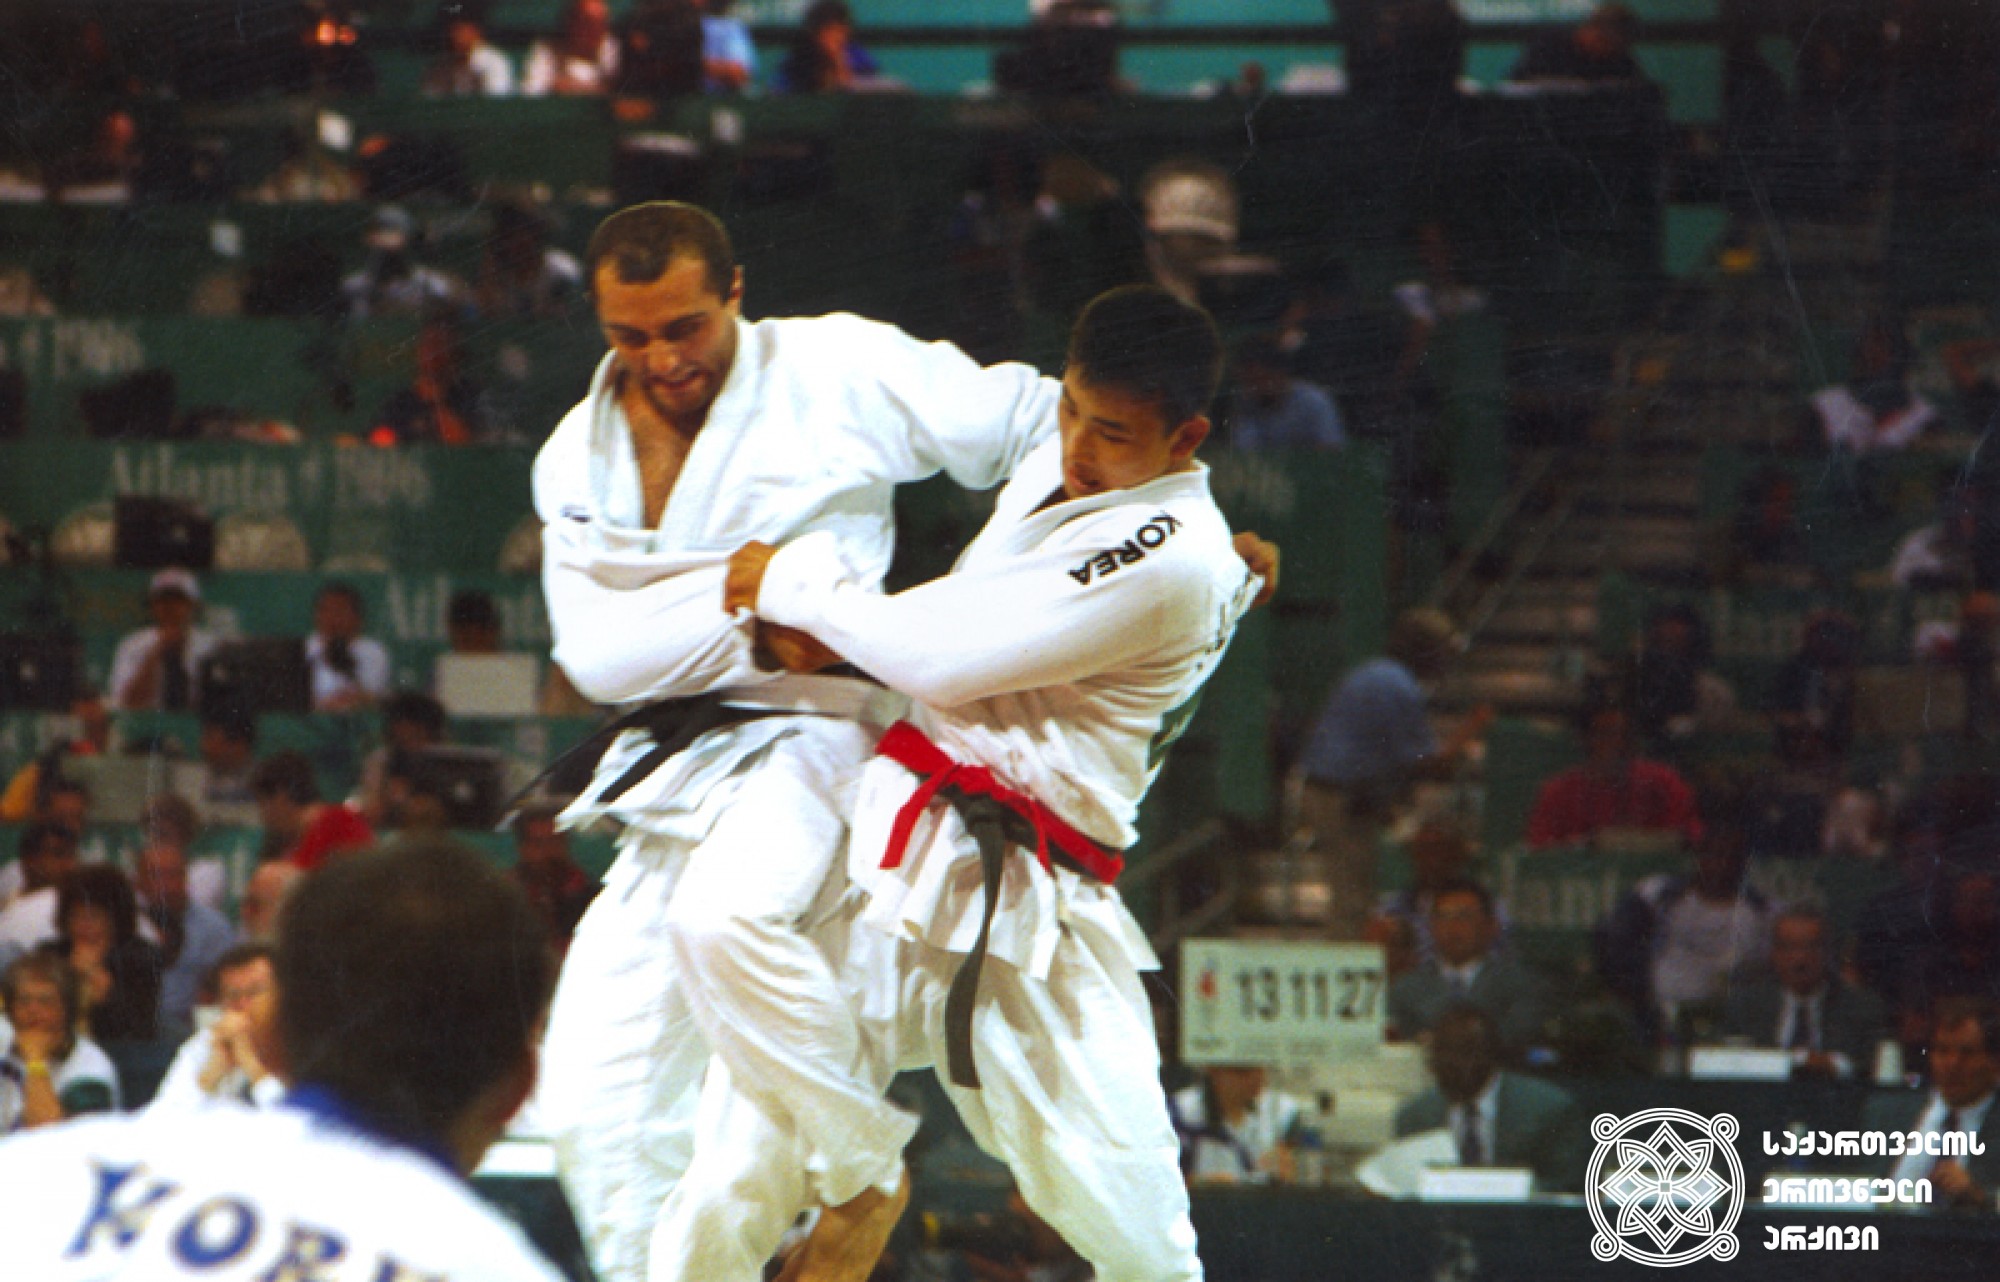 სოსო ლიპარტელიანი. <br>
XXVI ოლიმპიური თამაშების მესამე პრიზიორი ძიუდოში (1996 წელი, ატლანტა)
ფოტო საქართველოს ეროვნული ოლიმპიური კომიტეტის ვებგვერდიდან. <br>
Soso Liparteliani. <br>
Third-prize winner of the XXVI Olympic Games in Judo (1996, Atlanta). <br>
Photo from the web-site of the Georgian National Olympic Committee.